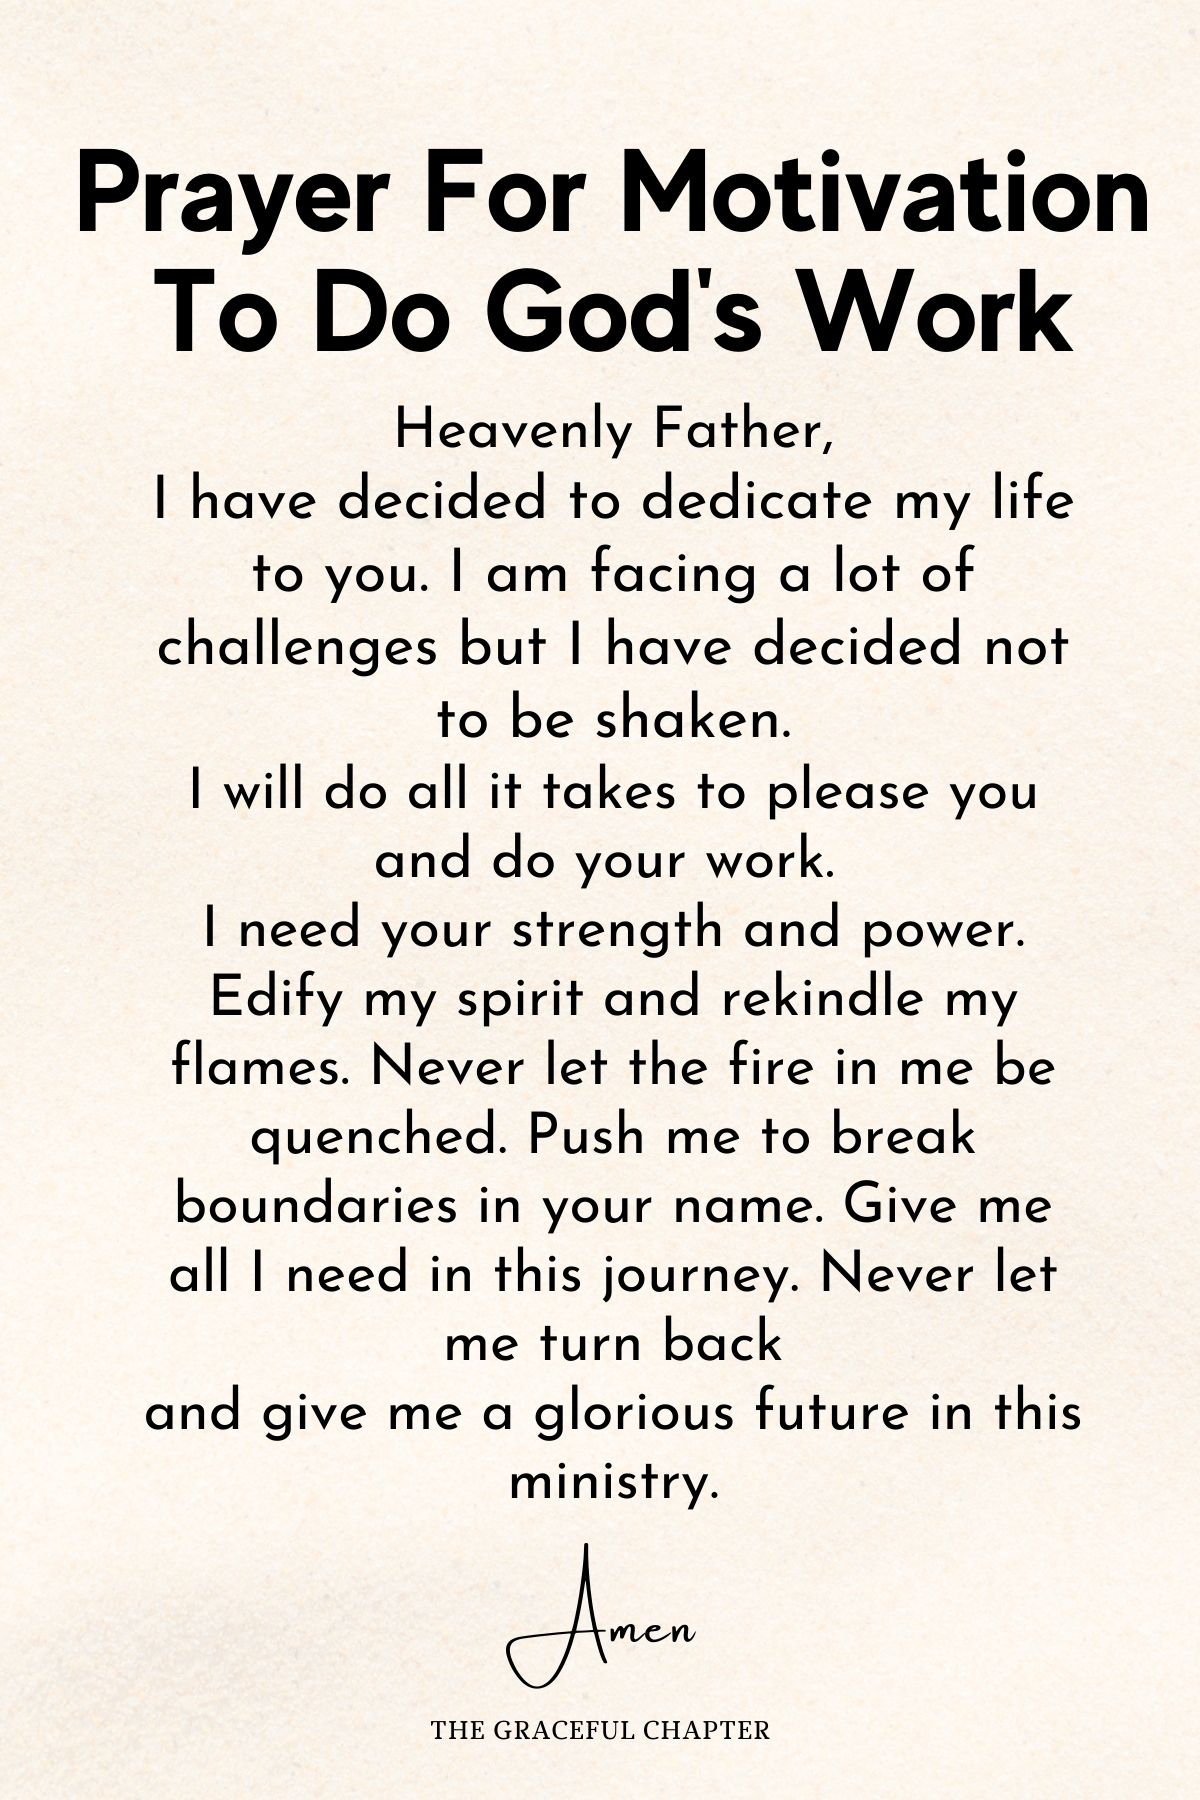 Prayer for motivation to do God's work